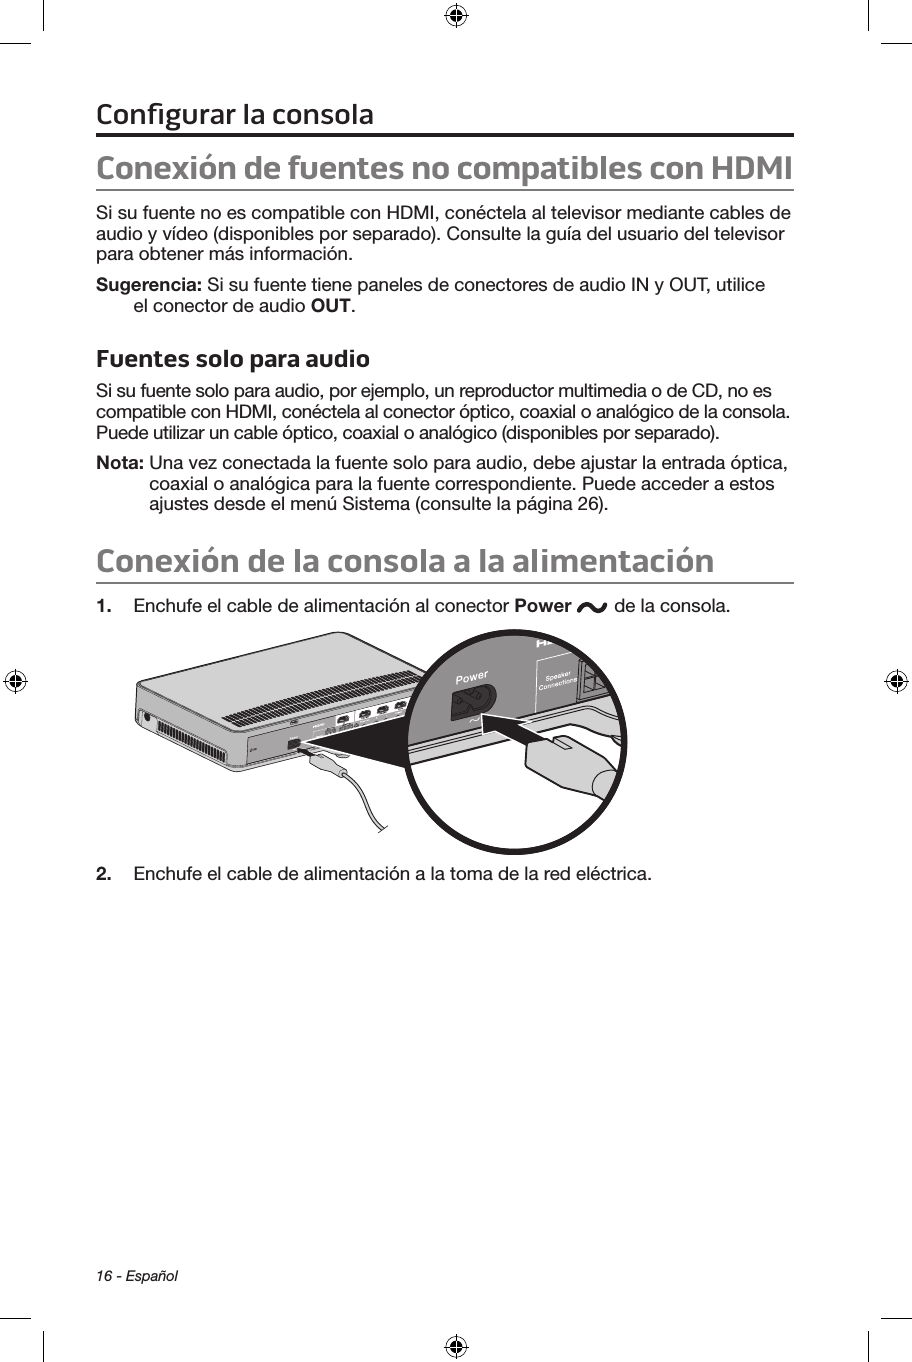 16 - EspañolConexión de fuentes no compatibles con HDMISi su fuente no es compatible con HDMI, conéctela al televisor mediante cables de audio y vídeo (disponibles por separado). Consulte la guía del usuario del televisor para obtener más información. Sugerencia: Si su fuente tiene paneles de conectores de audio IN y OUT, utilice el conector de audio OUT.Fuentes solo para audioSi su fuente solo para audio, por ejemplo, un reproductor multimedia o de CD, no es compatible con HDMI, conéctela al conector óptico, coaxial o analógico de la consola. Puede utilizar un cable óptico, coaxial o analógico (disponibles por separado).Nota:   Una vez conectada la fuente solo para audio, debe ajustar la entrada óptica, coaxial o analógica para la fuente correspondiente. Puede acceder a estos ajustes desde el menú Sistema (consulte la página 26).Conexión de la consola a la alimentación1.  Enchufe el cable de alimentación al conector Power  de la consola.2.  Enchufe el cable de alimentación a la toma de la red eléctrica. Conﬁgurar la consola